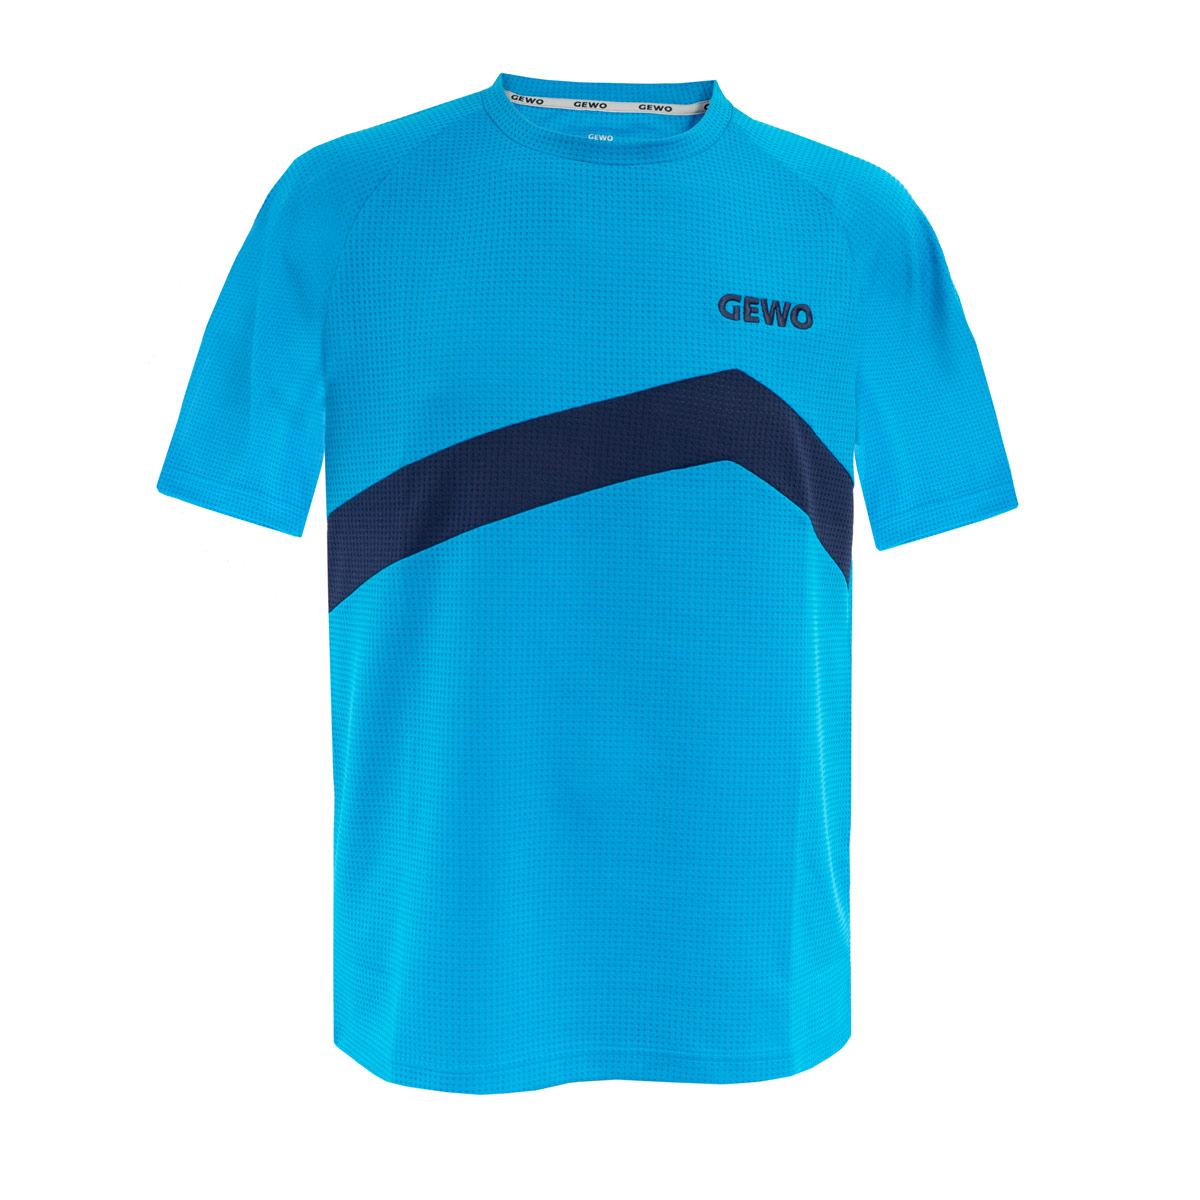 GEWO T-Shirt Belas Promo #teamGEWO blue/navy XS